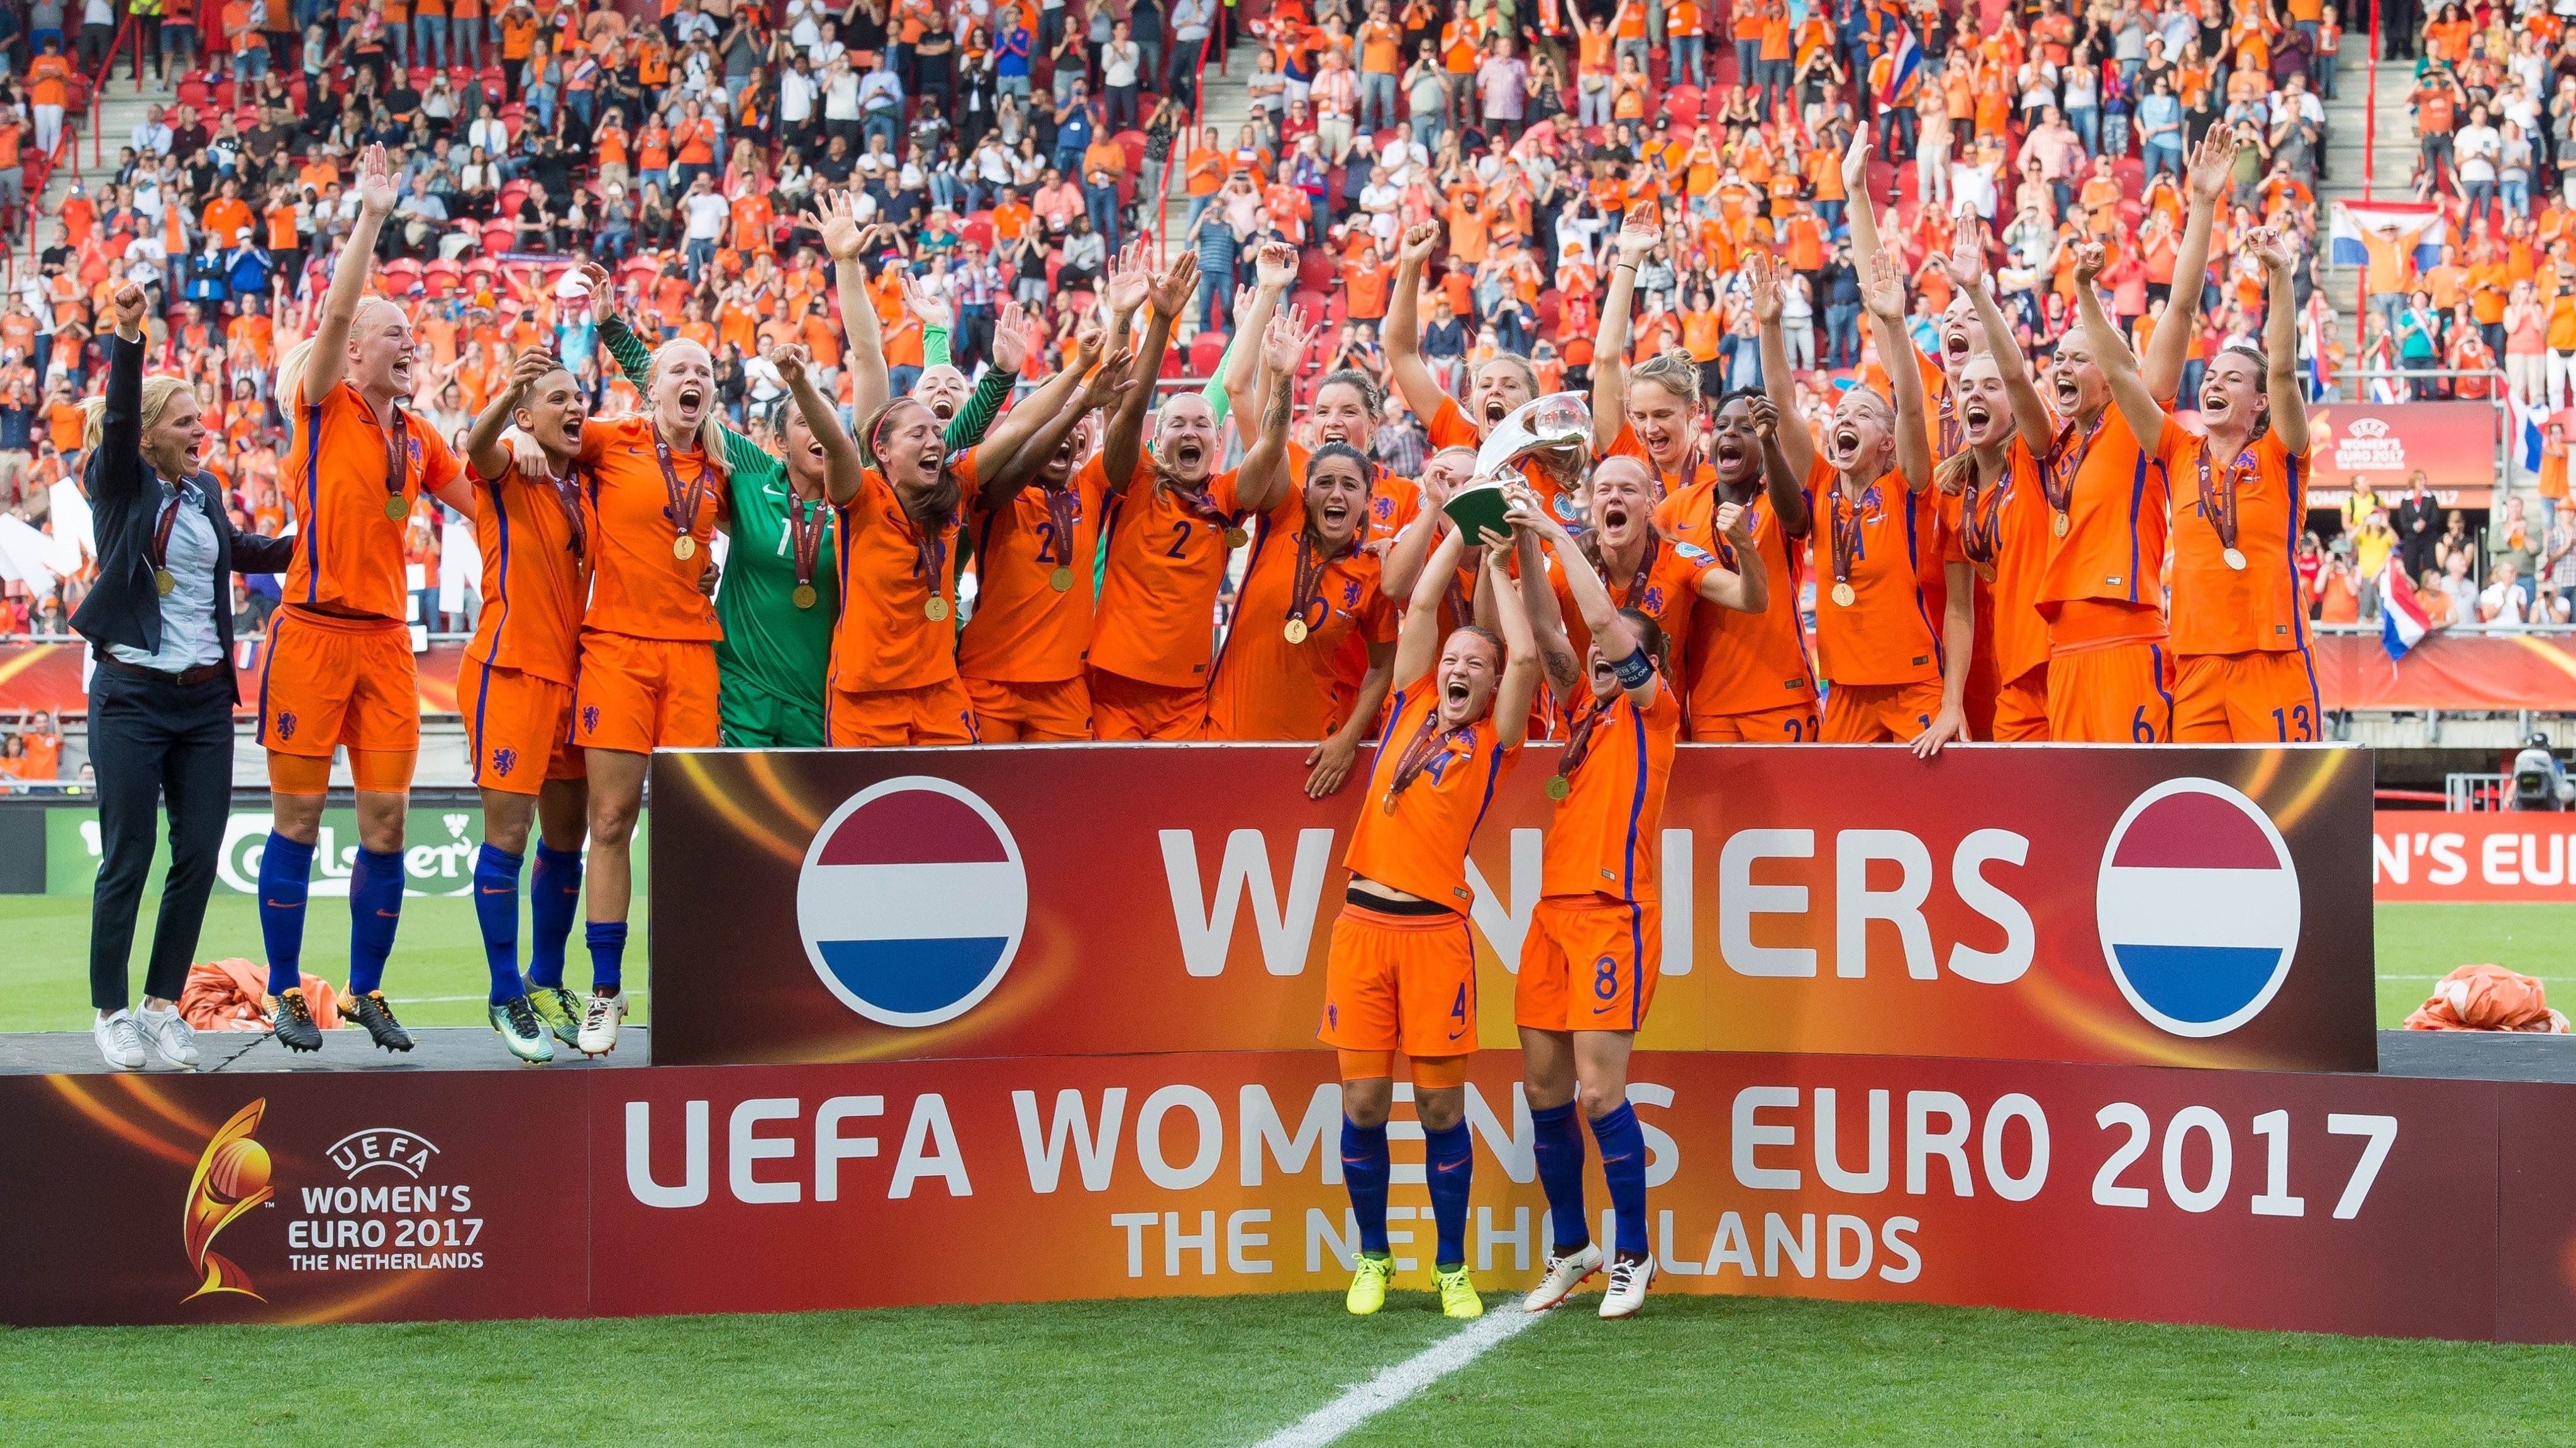 As jogadoras dos Países Baixos conquistaram em casa o troféu do Euro 2017